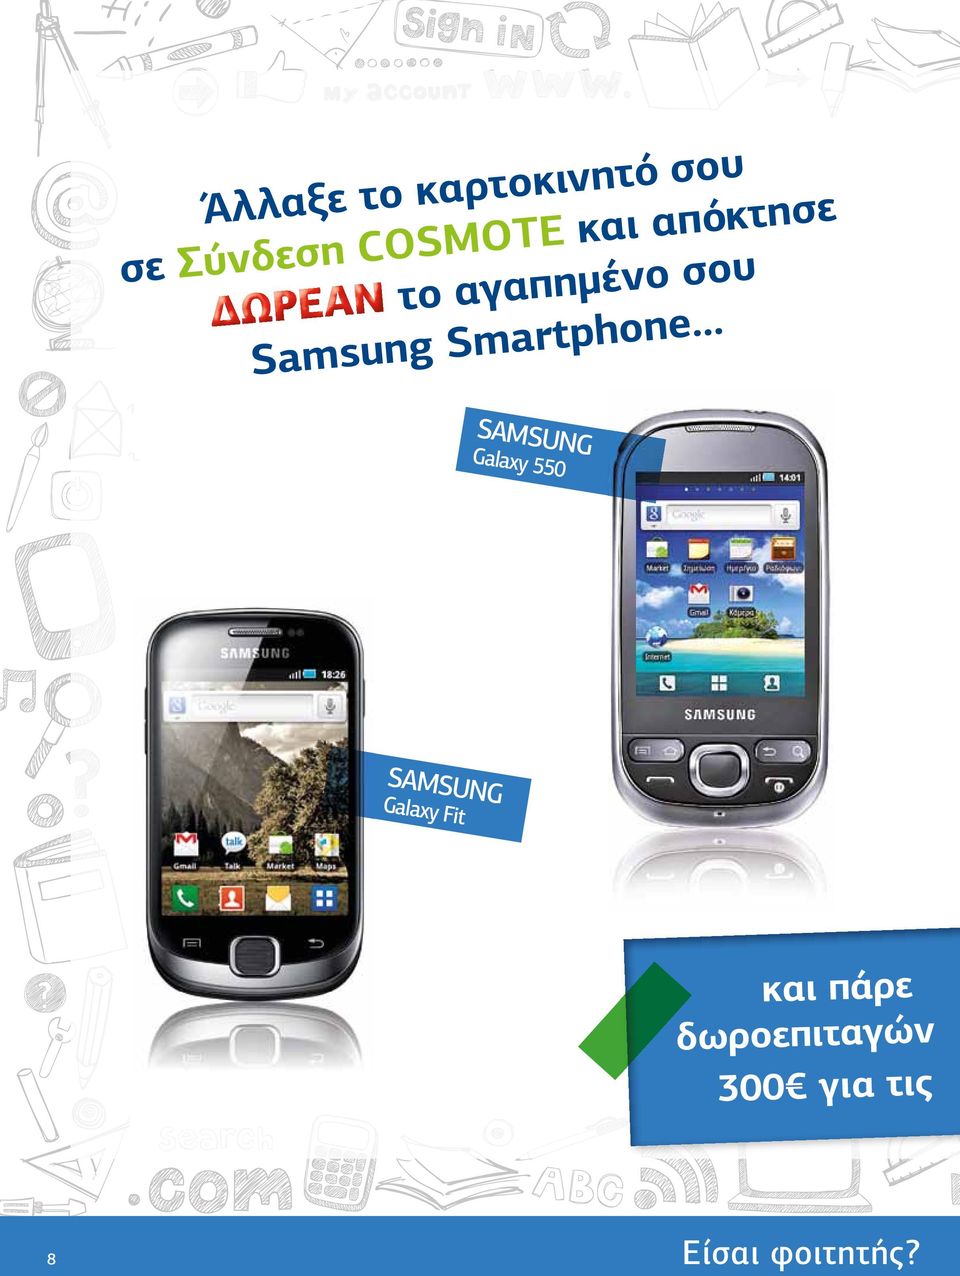 .. e n o h p t r a m Samsung S SAMSUN G Gala xy 550